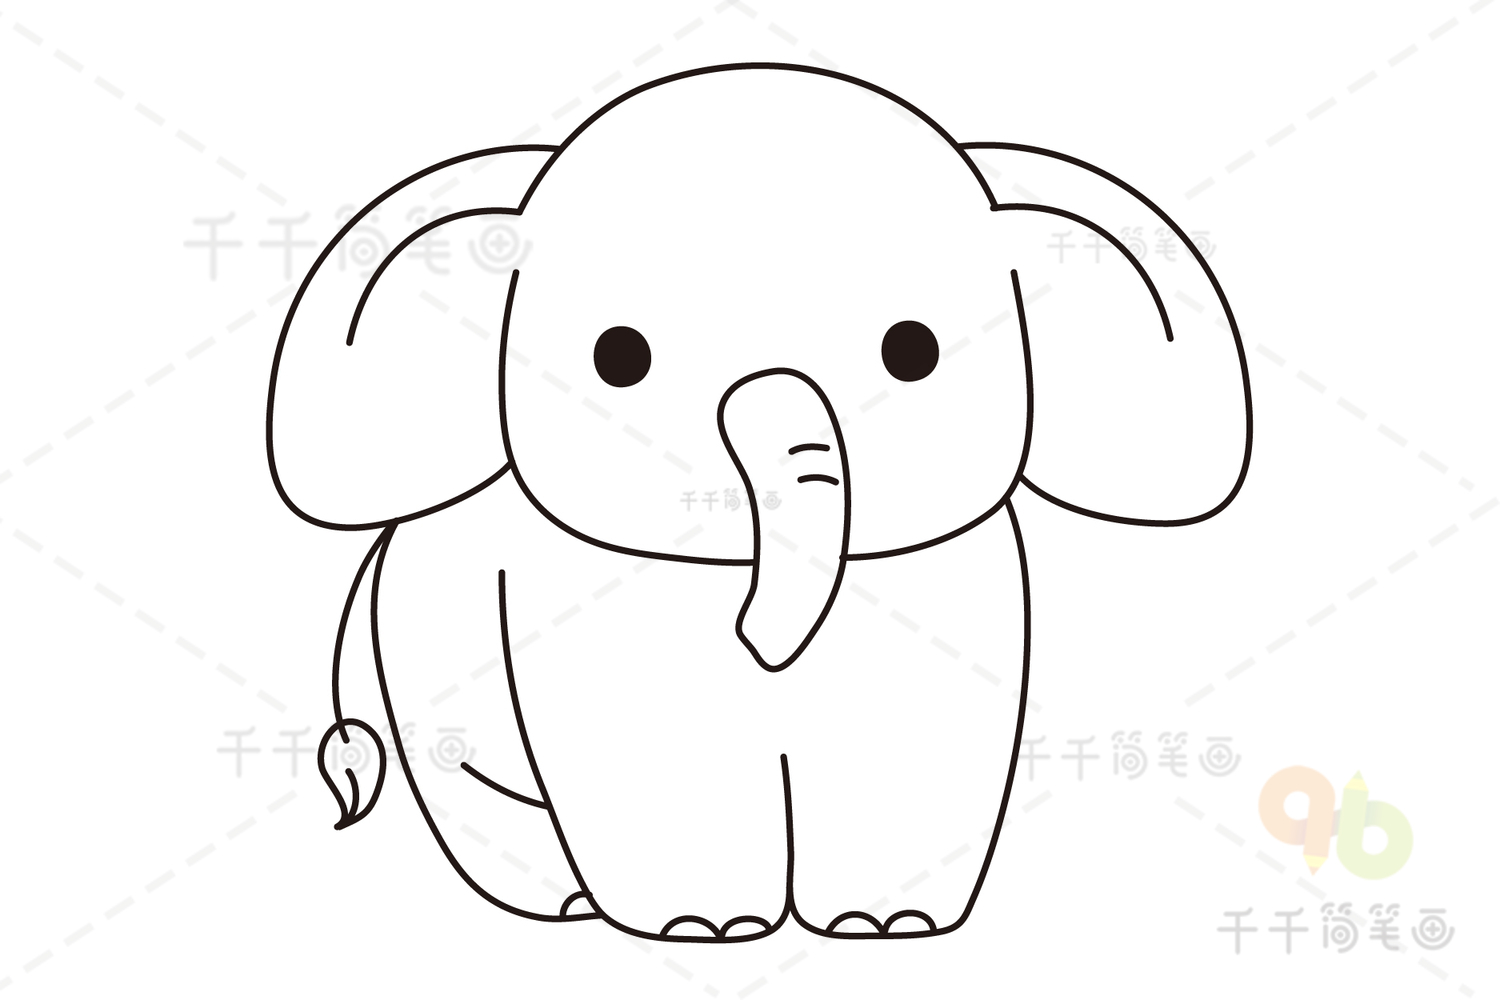 可爱的大象简笔画步骤图解